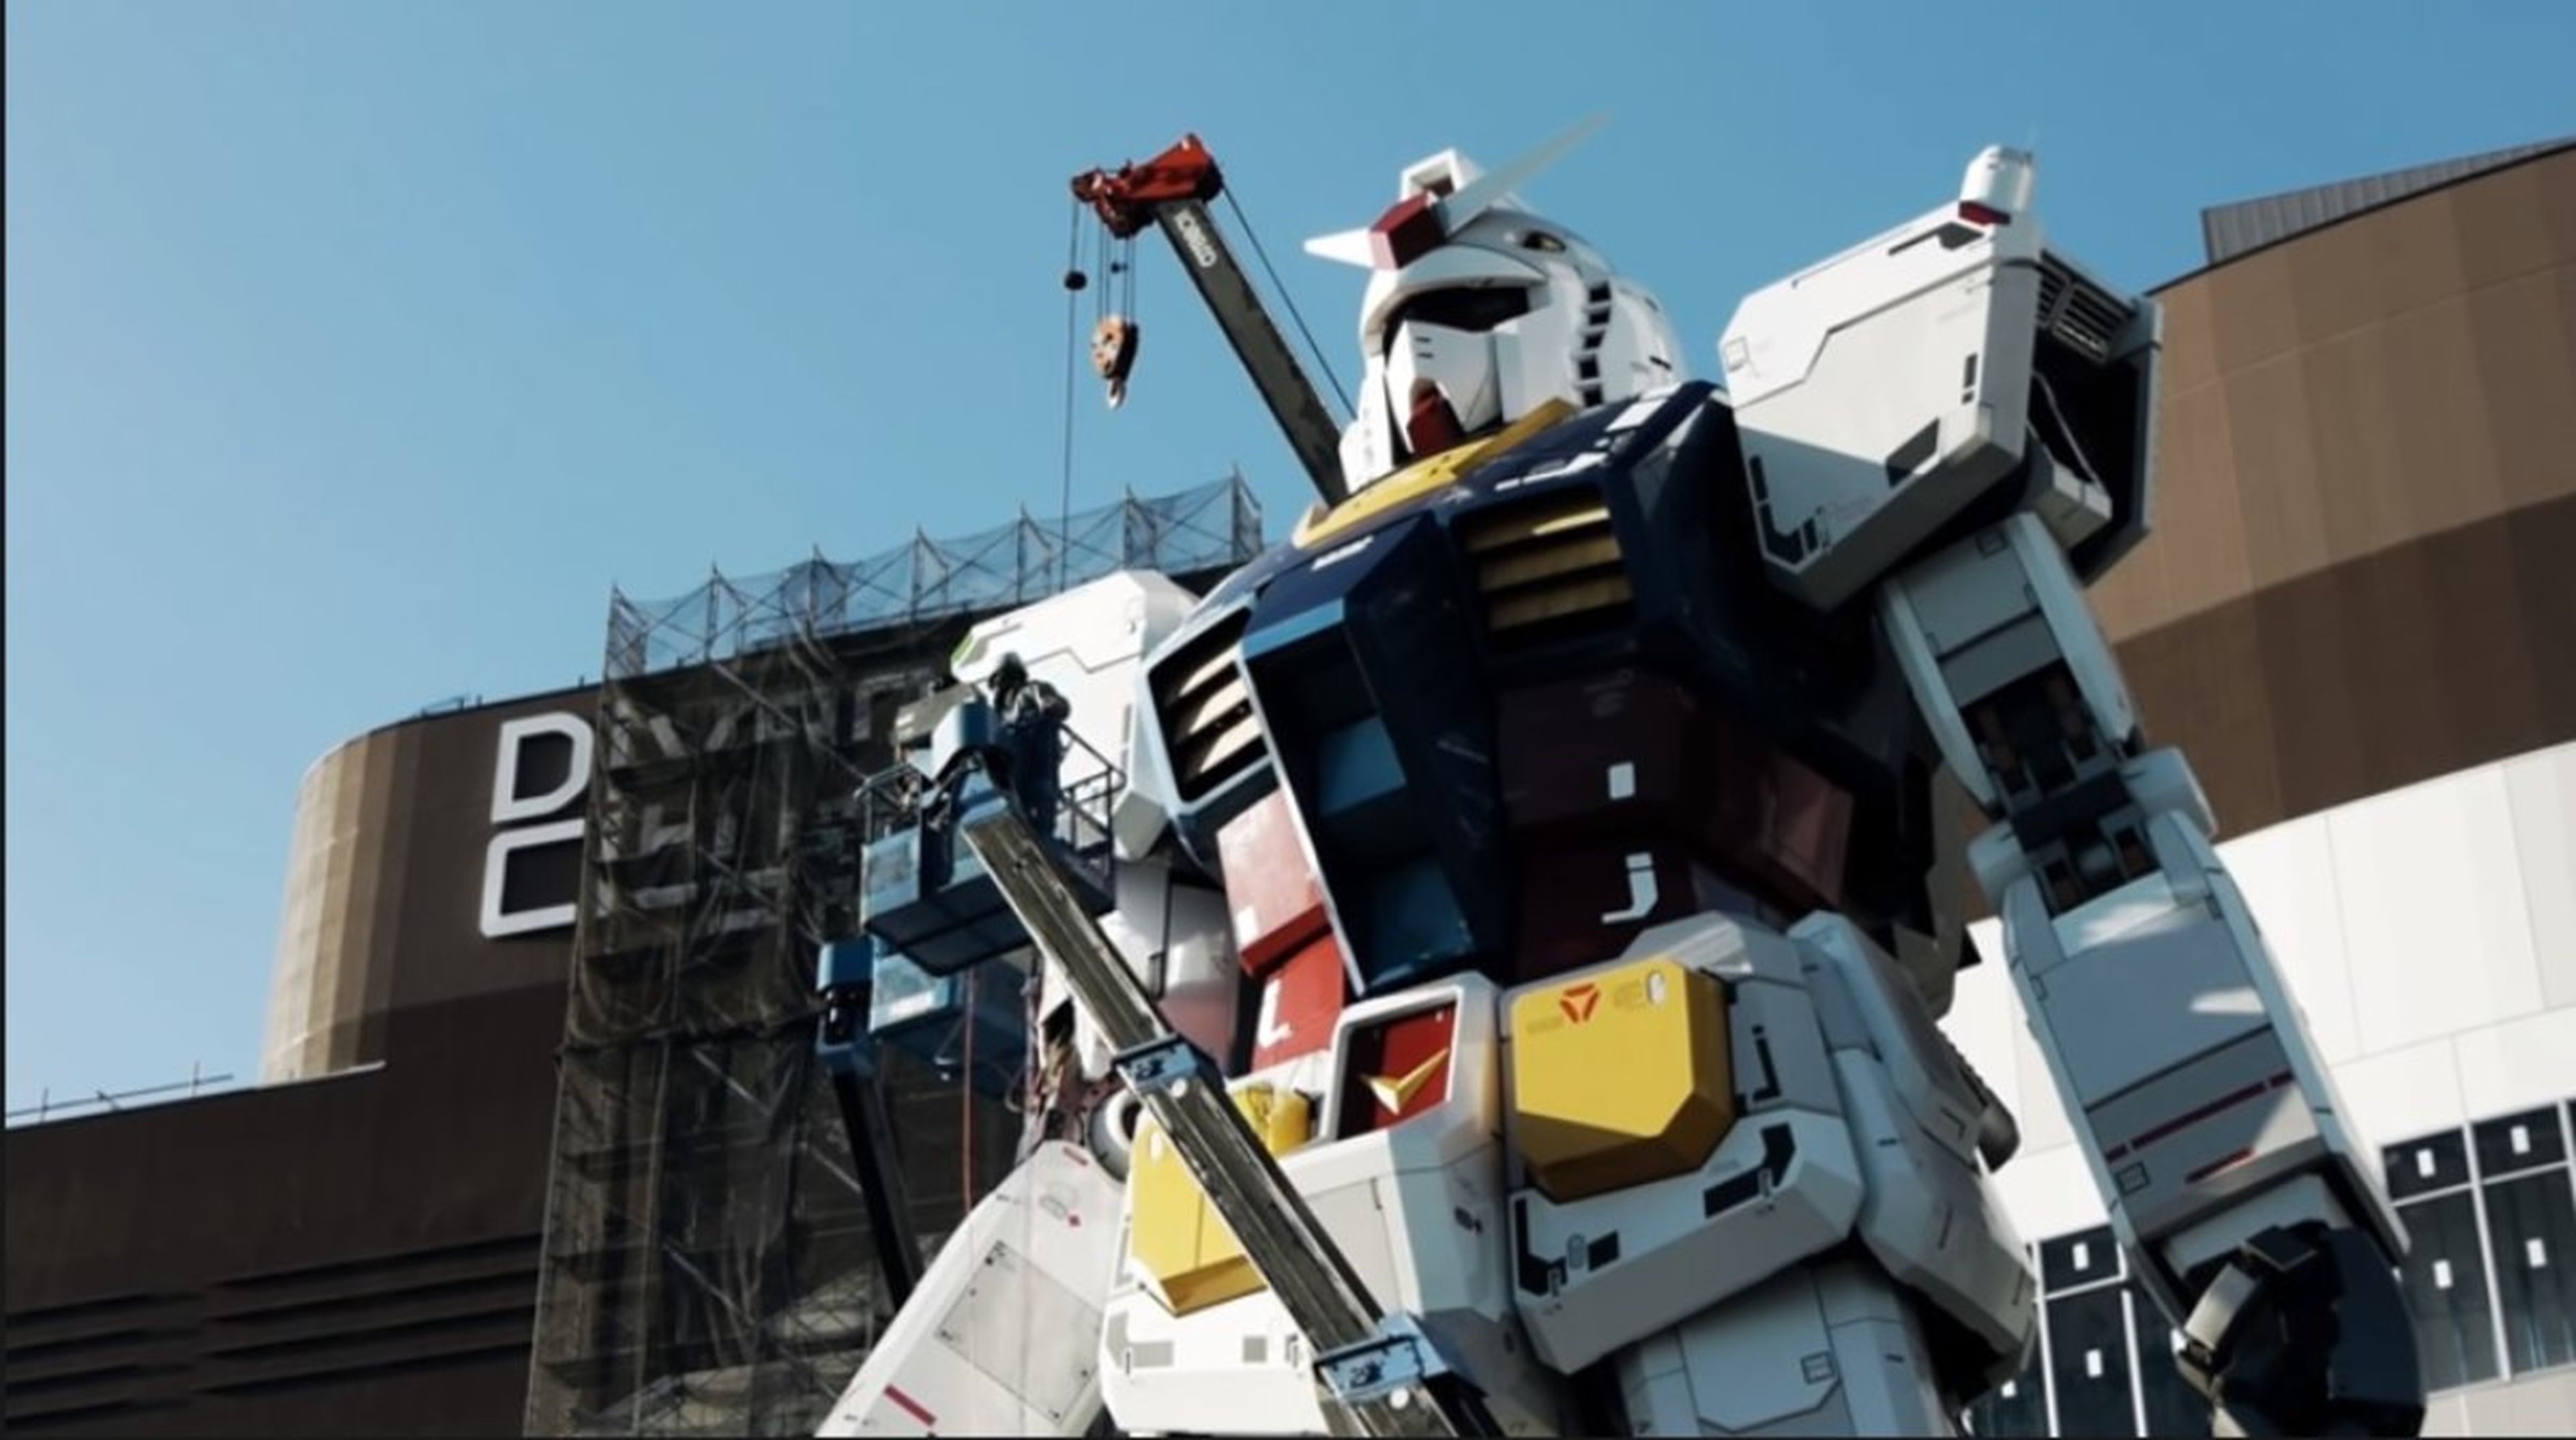 Gundam, el robot gigante construido por ingenieros japoneses.